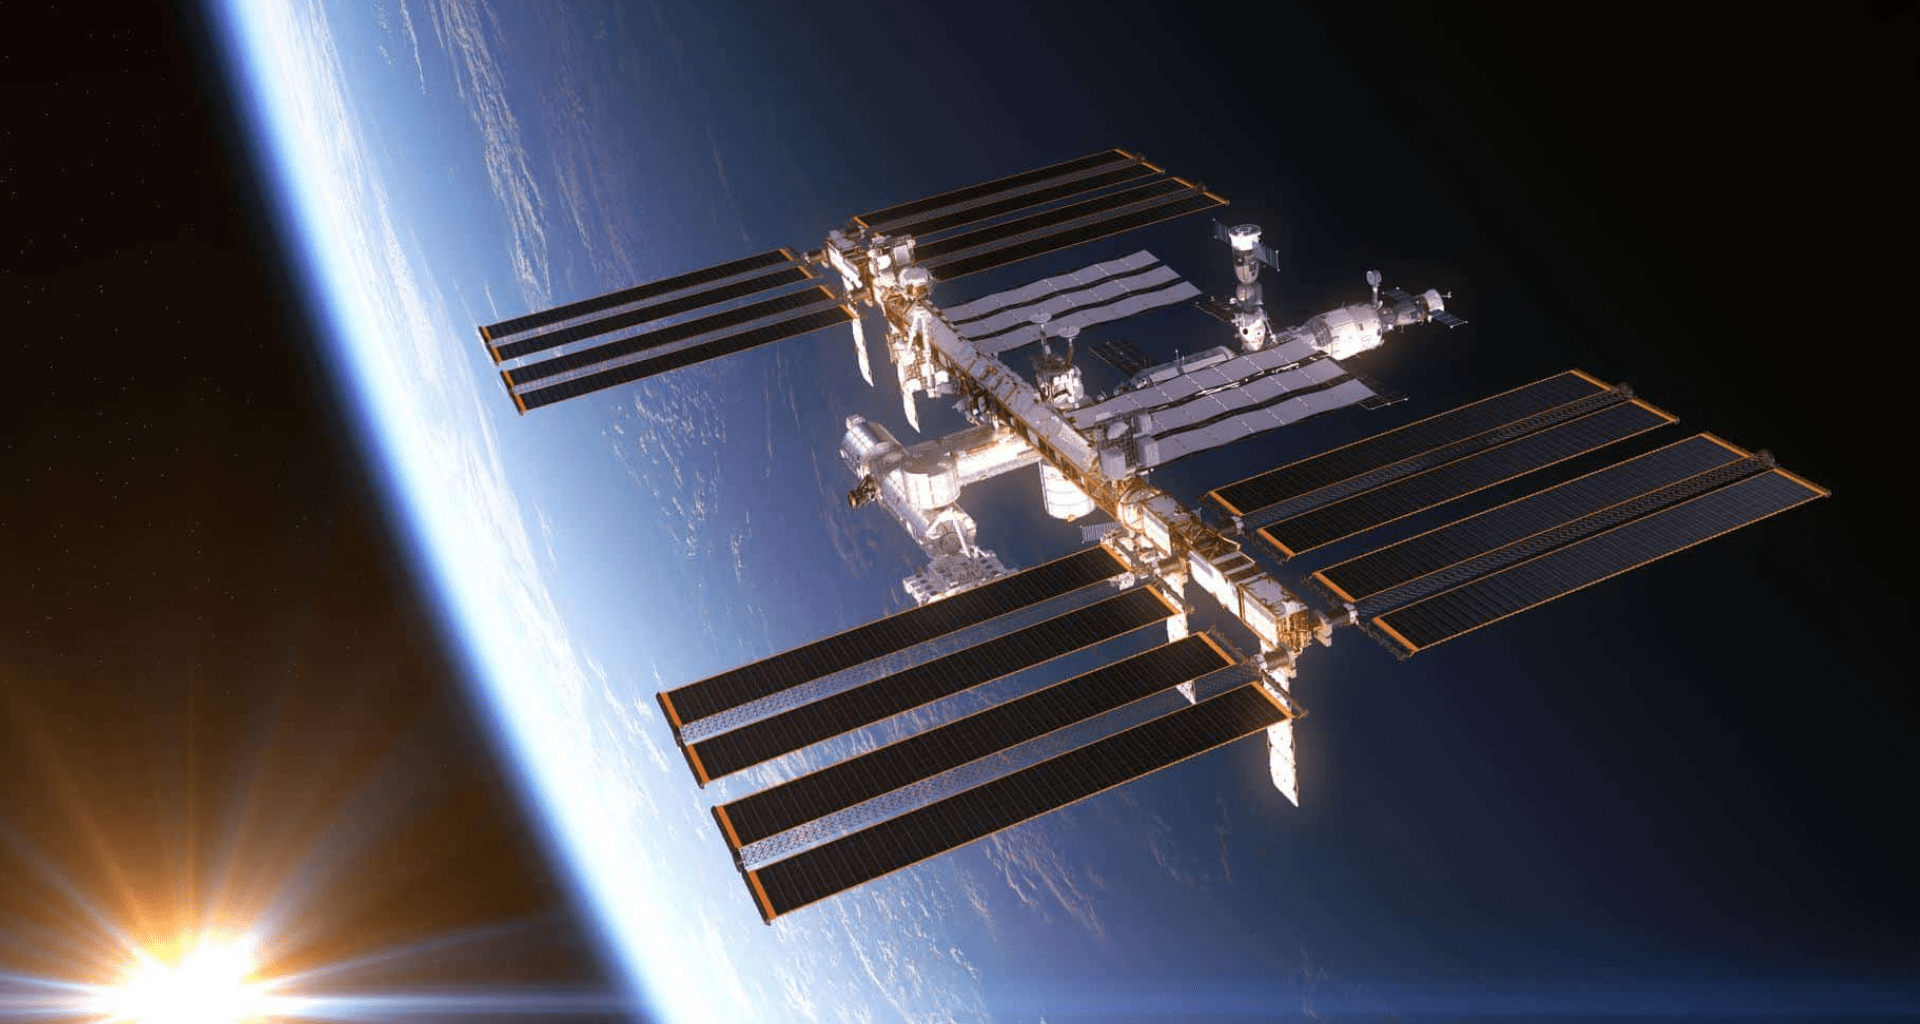 Foto da iss, a estação espacial internacional